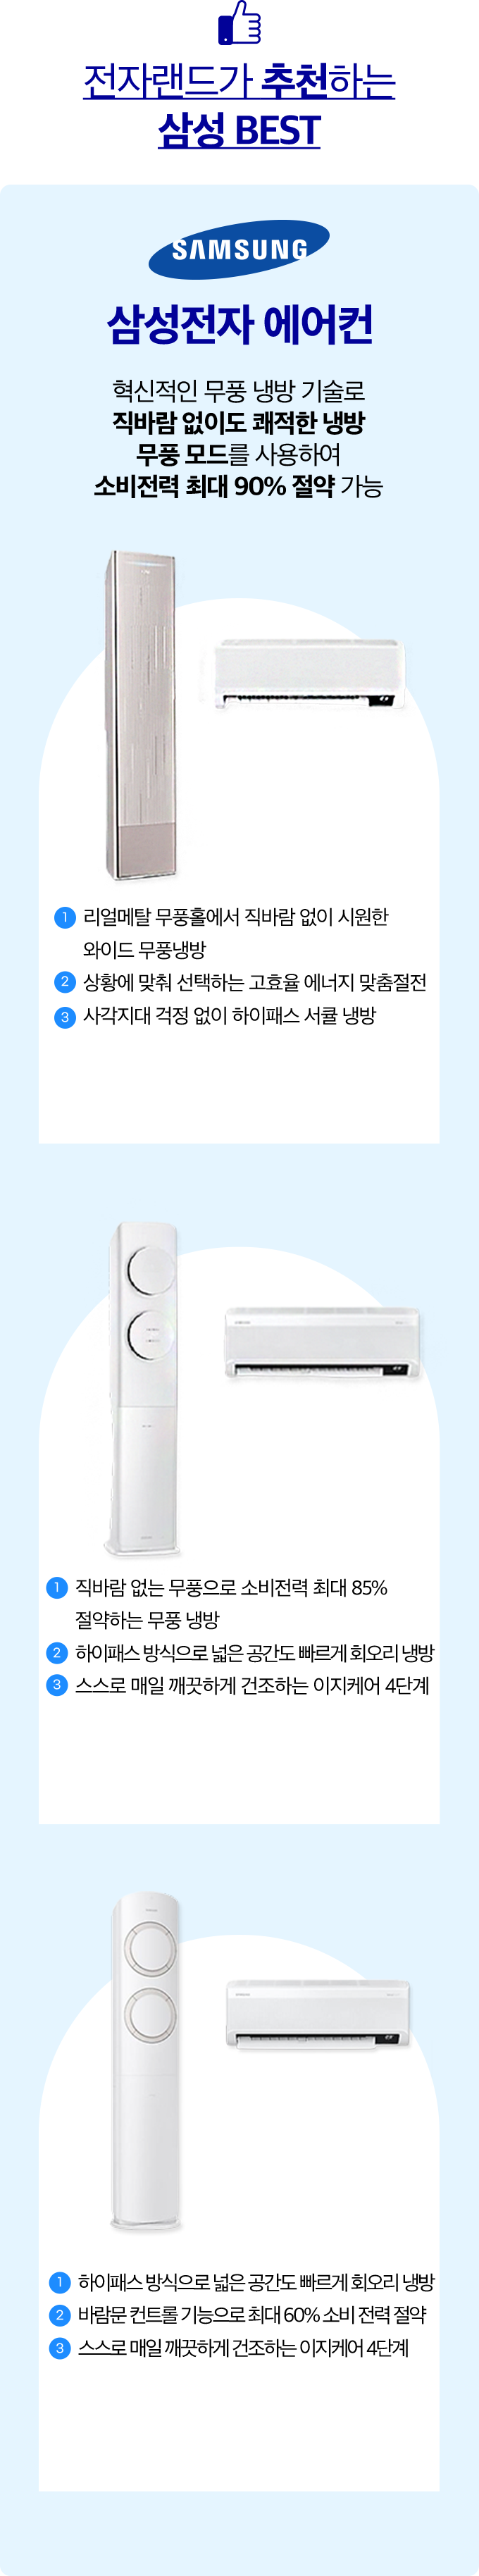 삼성전자 에어컨 혁신적인 무풍 냉방 기술로 직바람 없이도 쾌적한 냉방 무풍 모드를 사용하여 소비전력 최대 90% 절약 가능